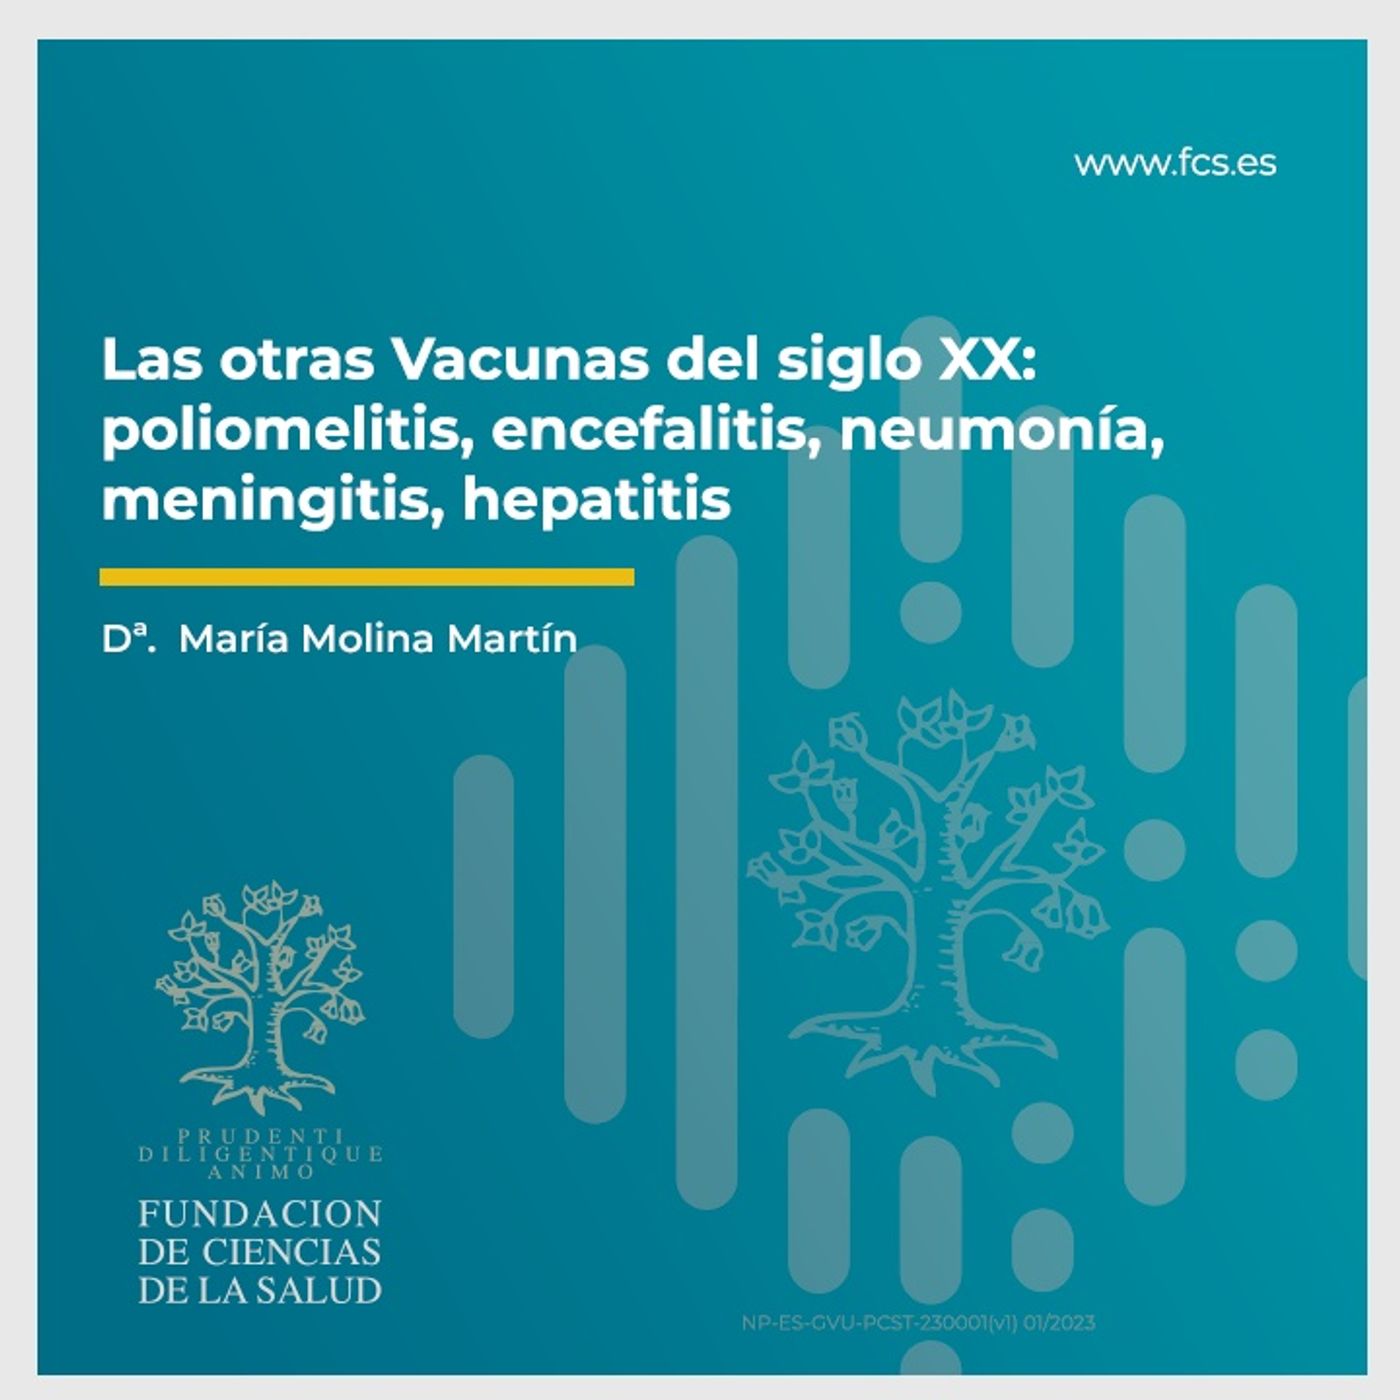 Sesión XII: "Las otras vacunas del siglo XX" con Dª María Molina Martín